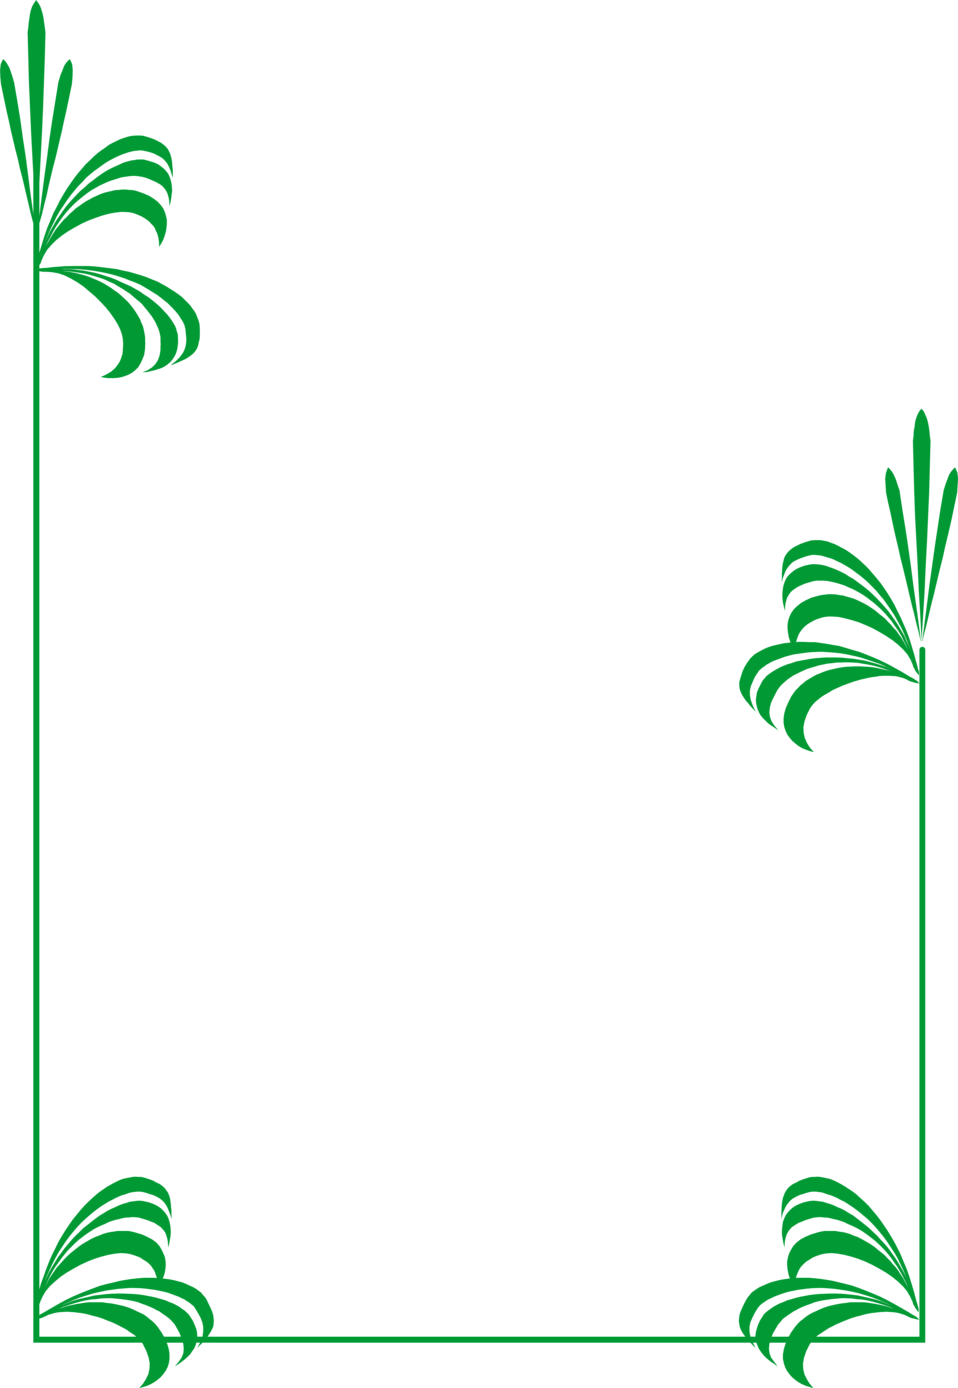 leaf border clipart. leaf border clipart. order with green leaves. order with green leaves. Plumbstone. Feb 25, 02:57 AM